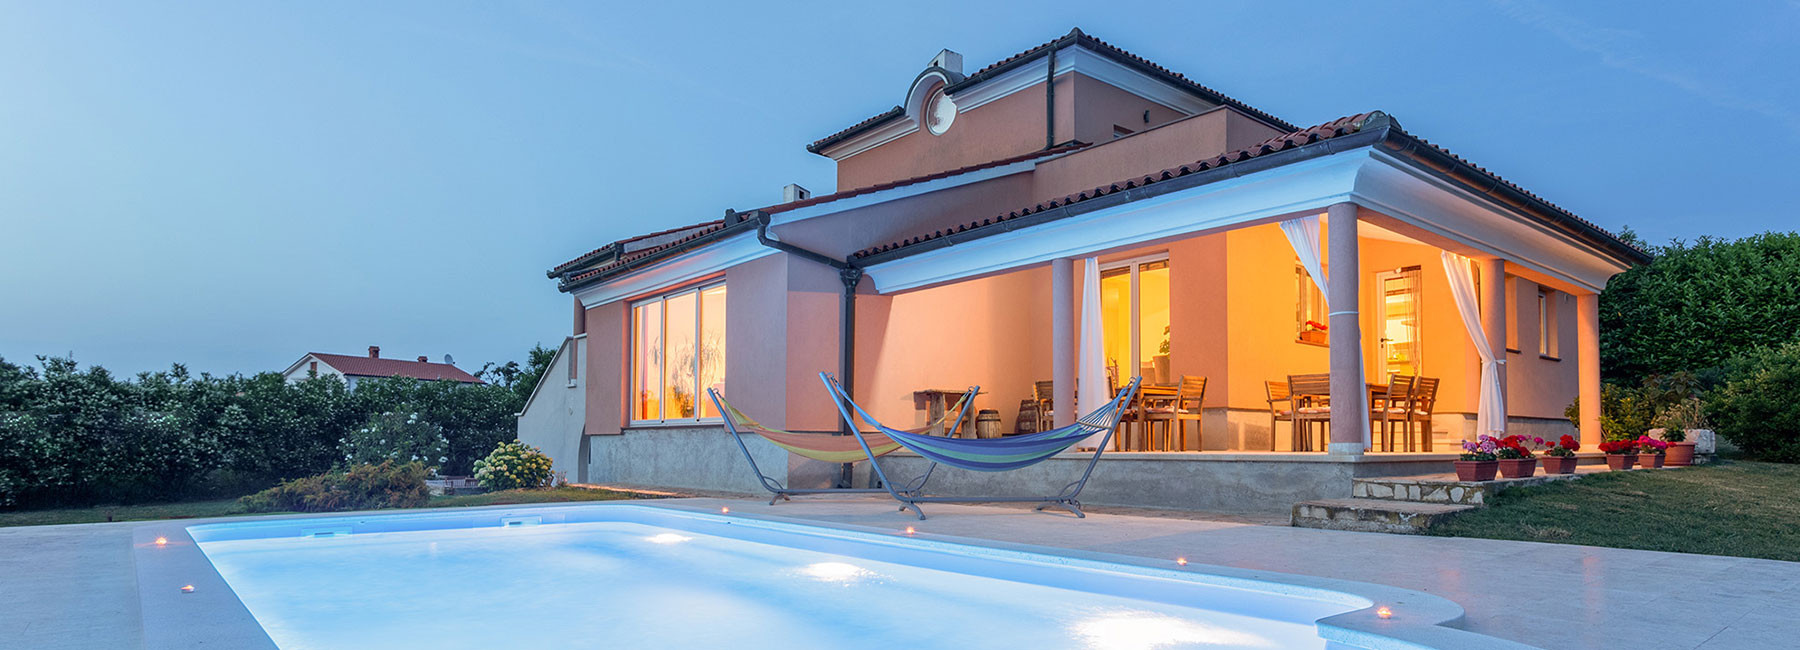 Kleiner Garten Mit Pool Frisch Villa Mirna Moderne Villa Mit Pool In Medulin Kroatien